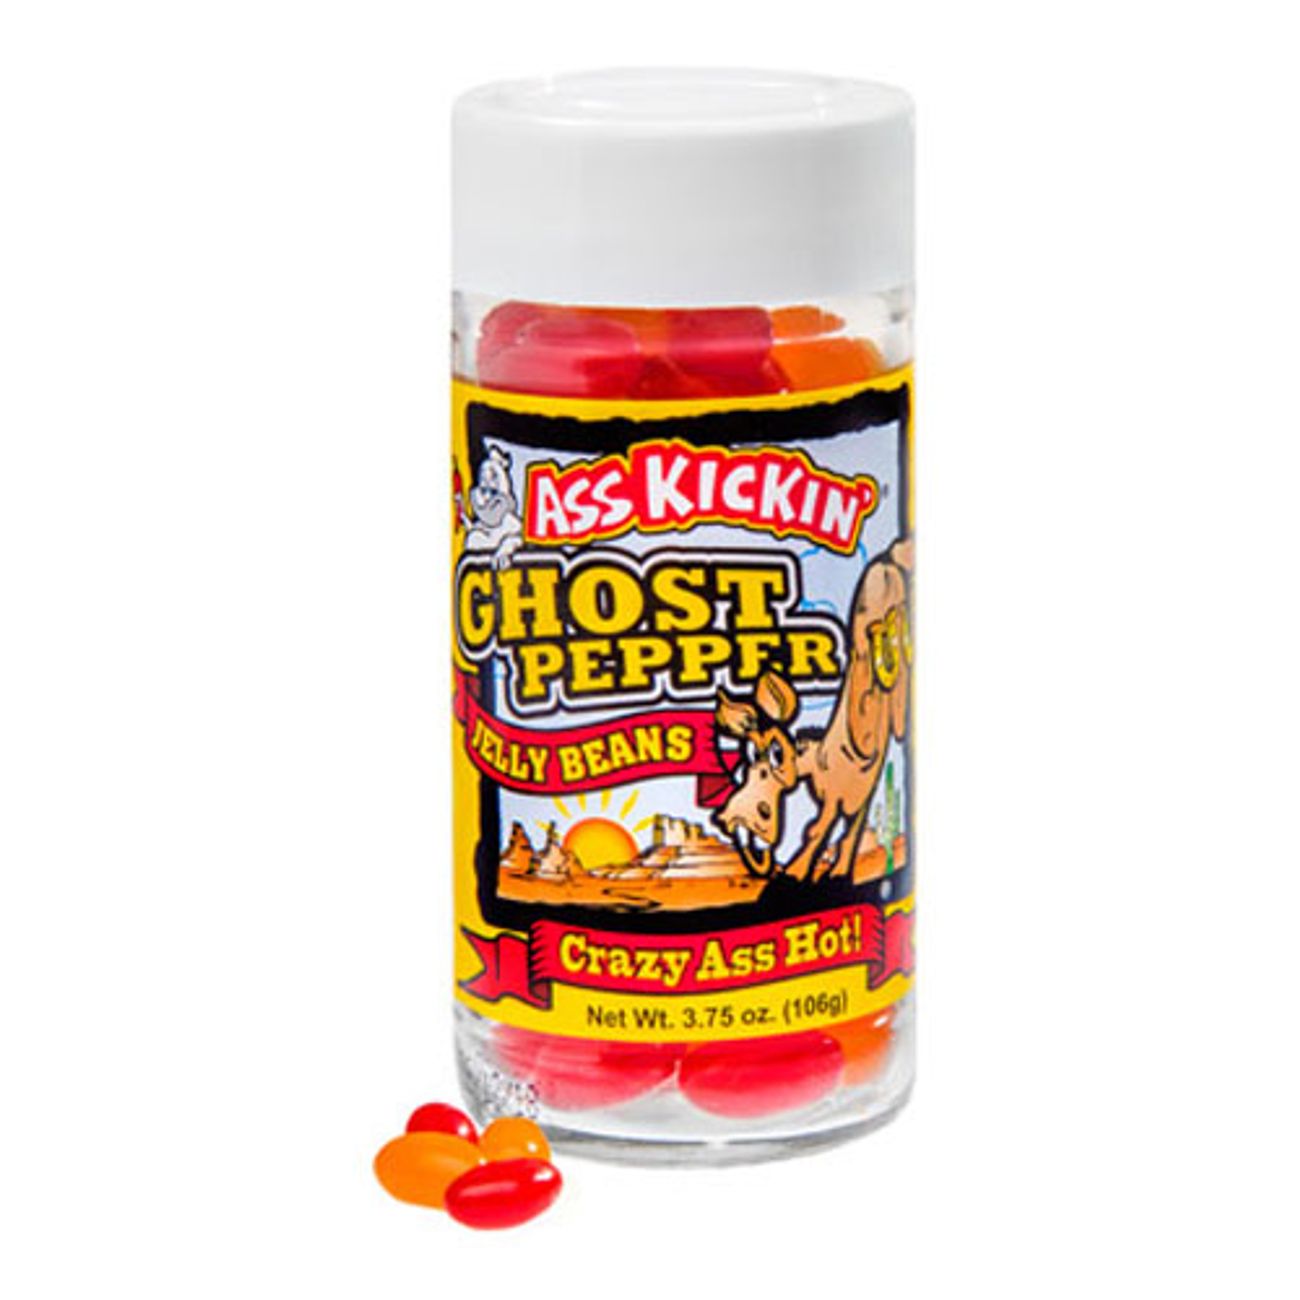 ass-kickin-ghost-pepper-jelly-beans-1